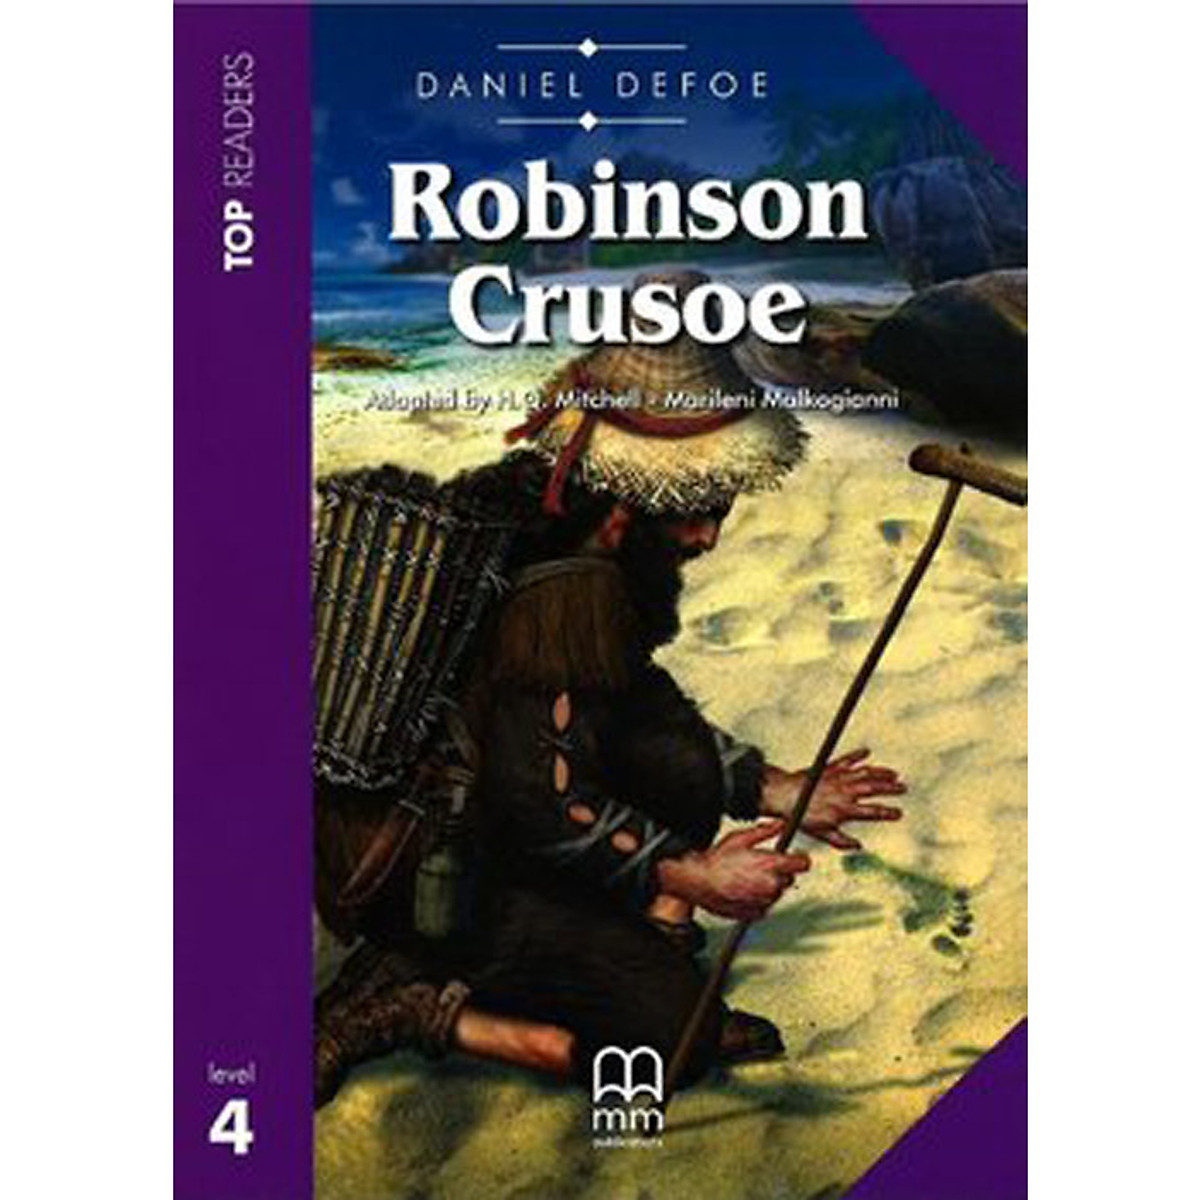 MM Publications: Truyện luyện đọc tiếng Anh theo trình độ - Robinson Crusoe (Student's Pack + CD)